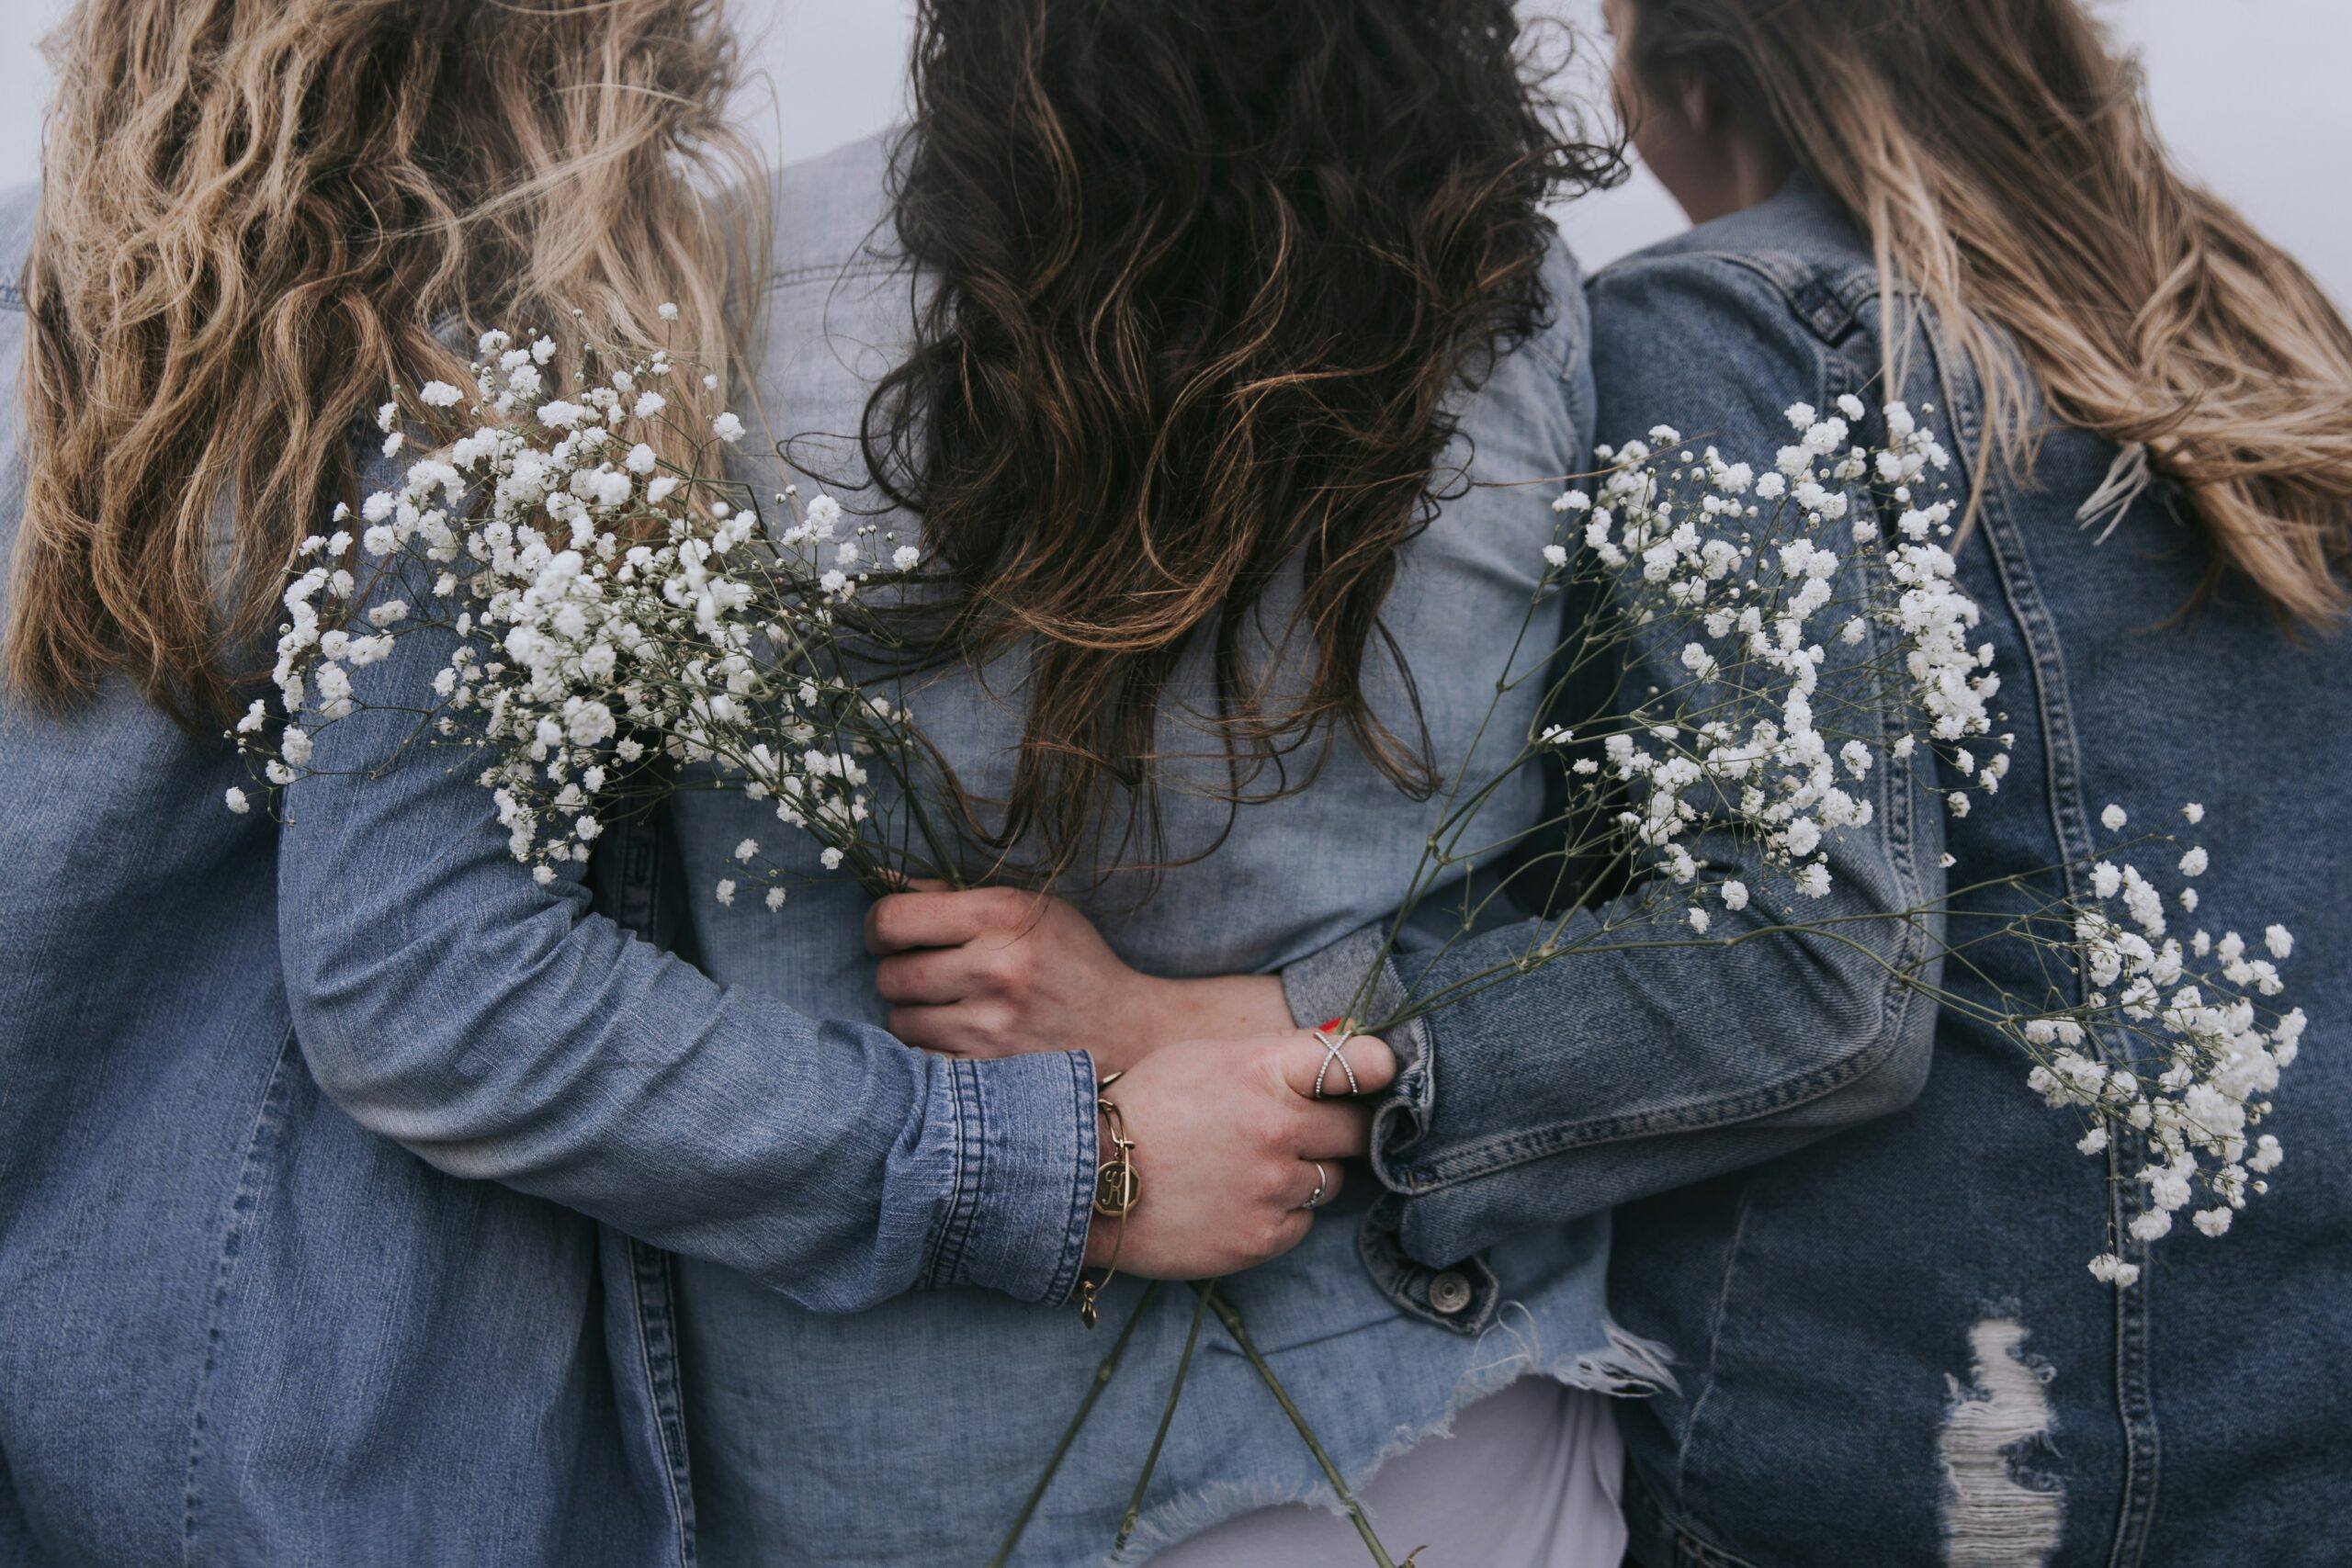 Trzy kobiety stoją tyłem. Są ubrane w niebieskie kurtki, mają długie włosy. Obejmują się przyjacielsko, dwie z nich trzymają w dłoniach białe kwiaty.